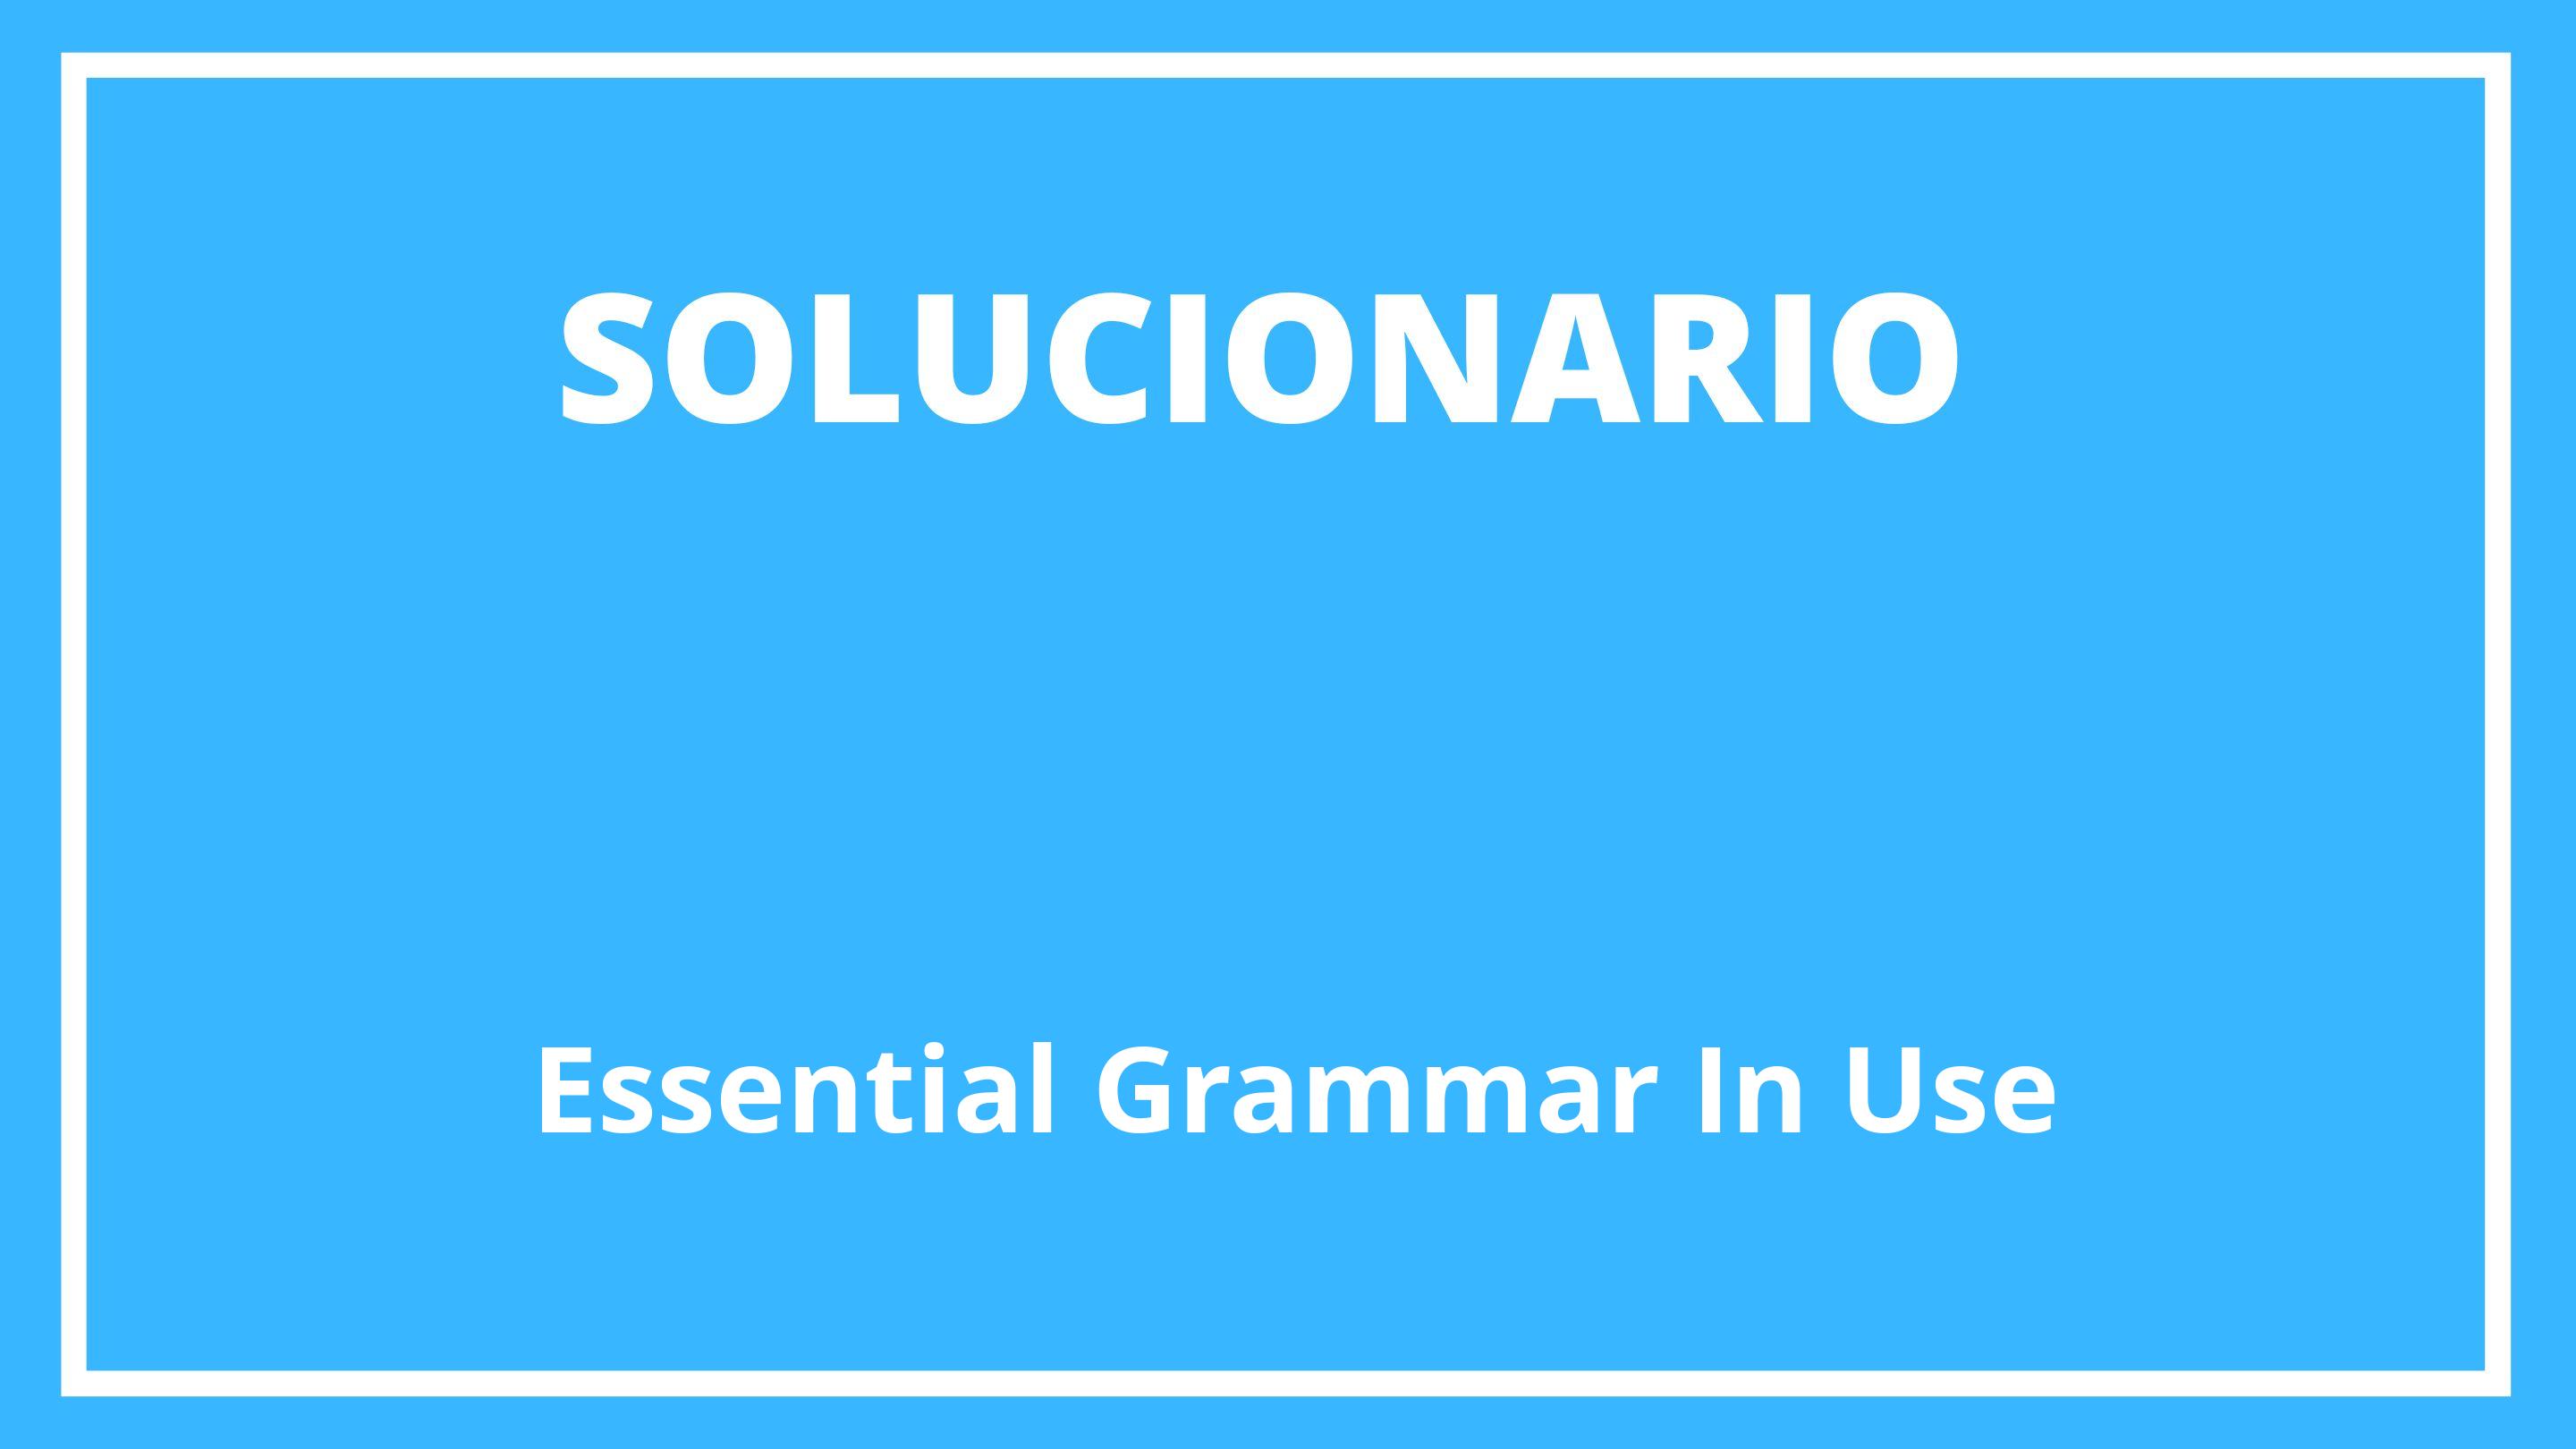 Essential Grammar In Use Solucionario